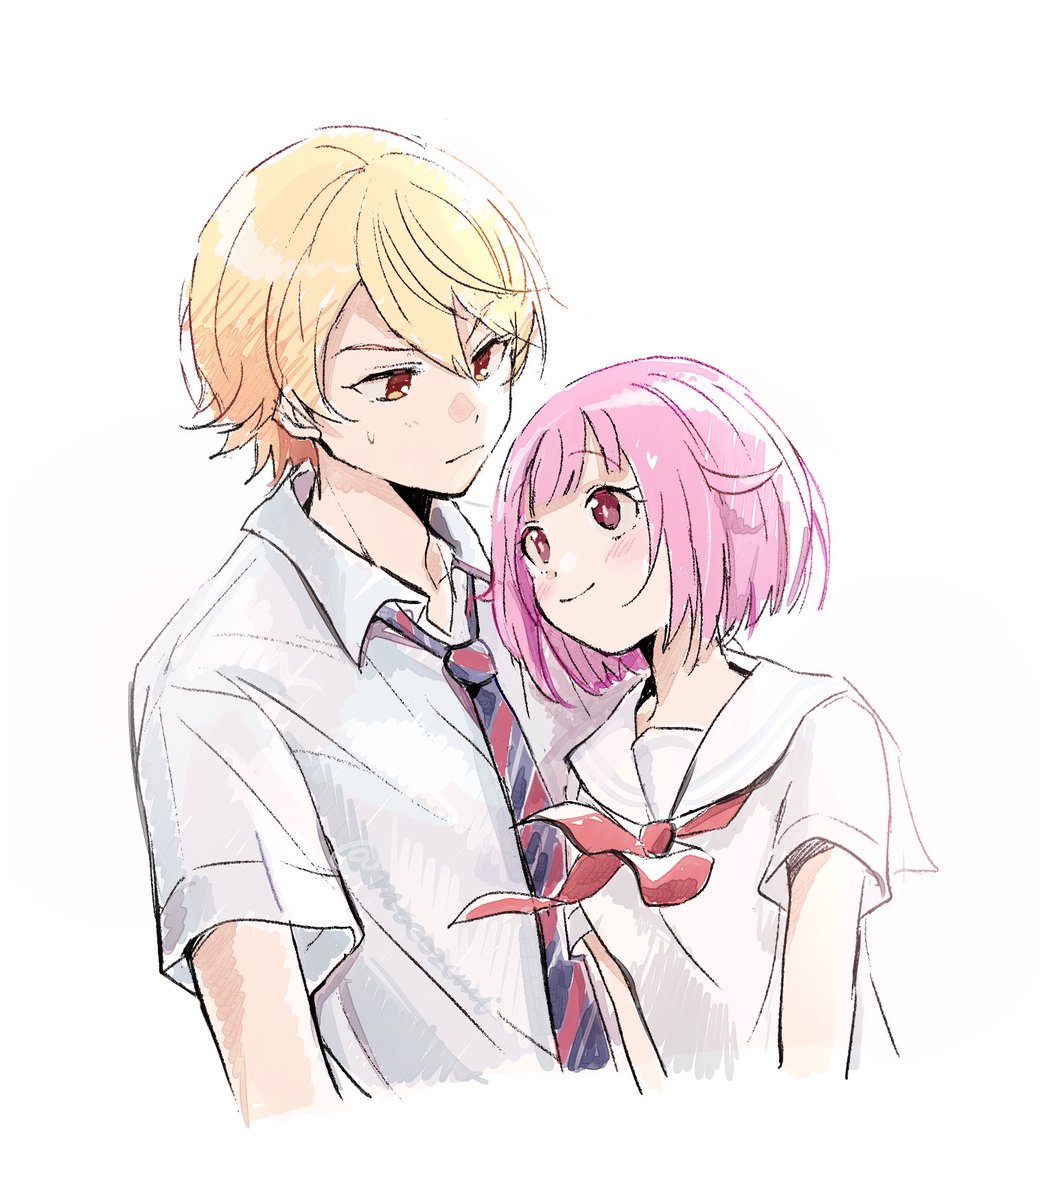 1girl 1boy blonde hair school uniform pink hair necktie striped necktie  illustration images